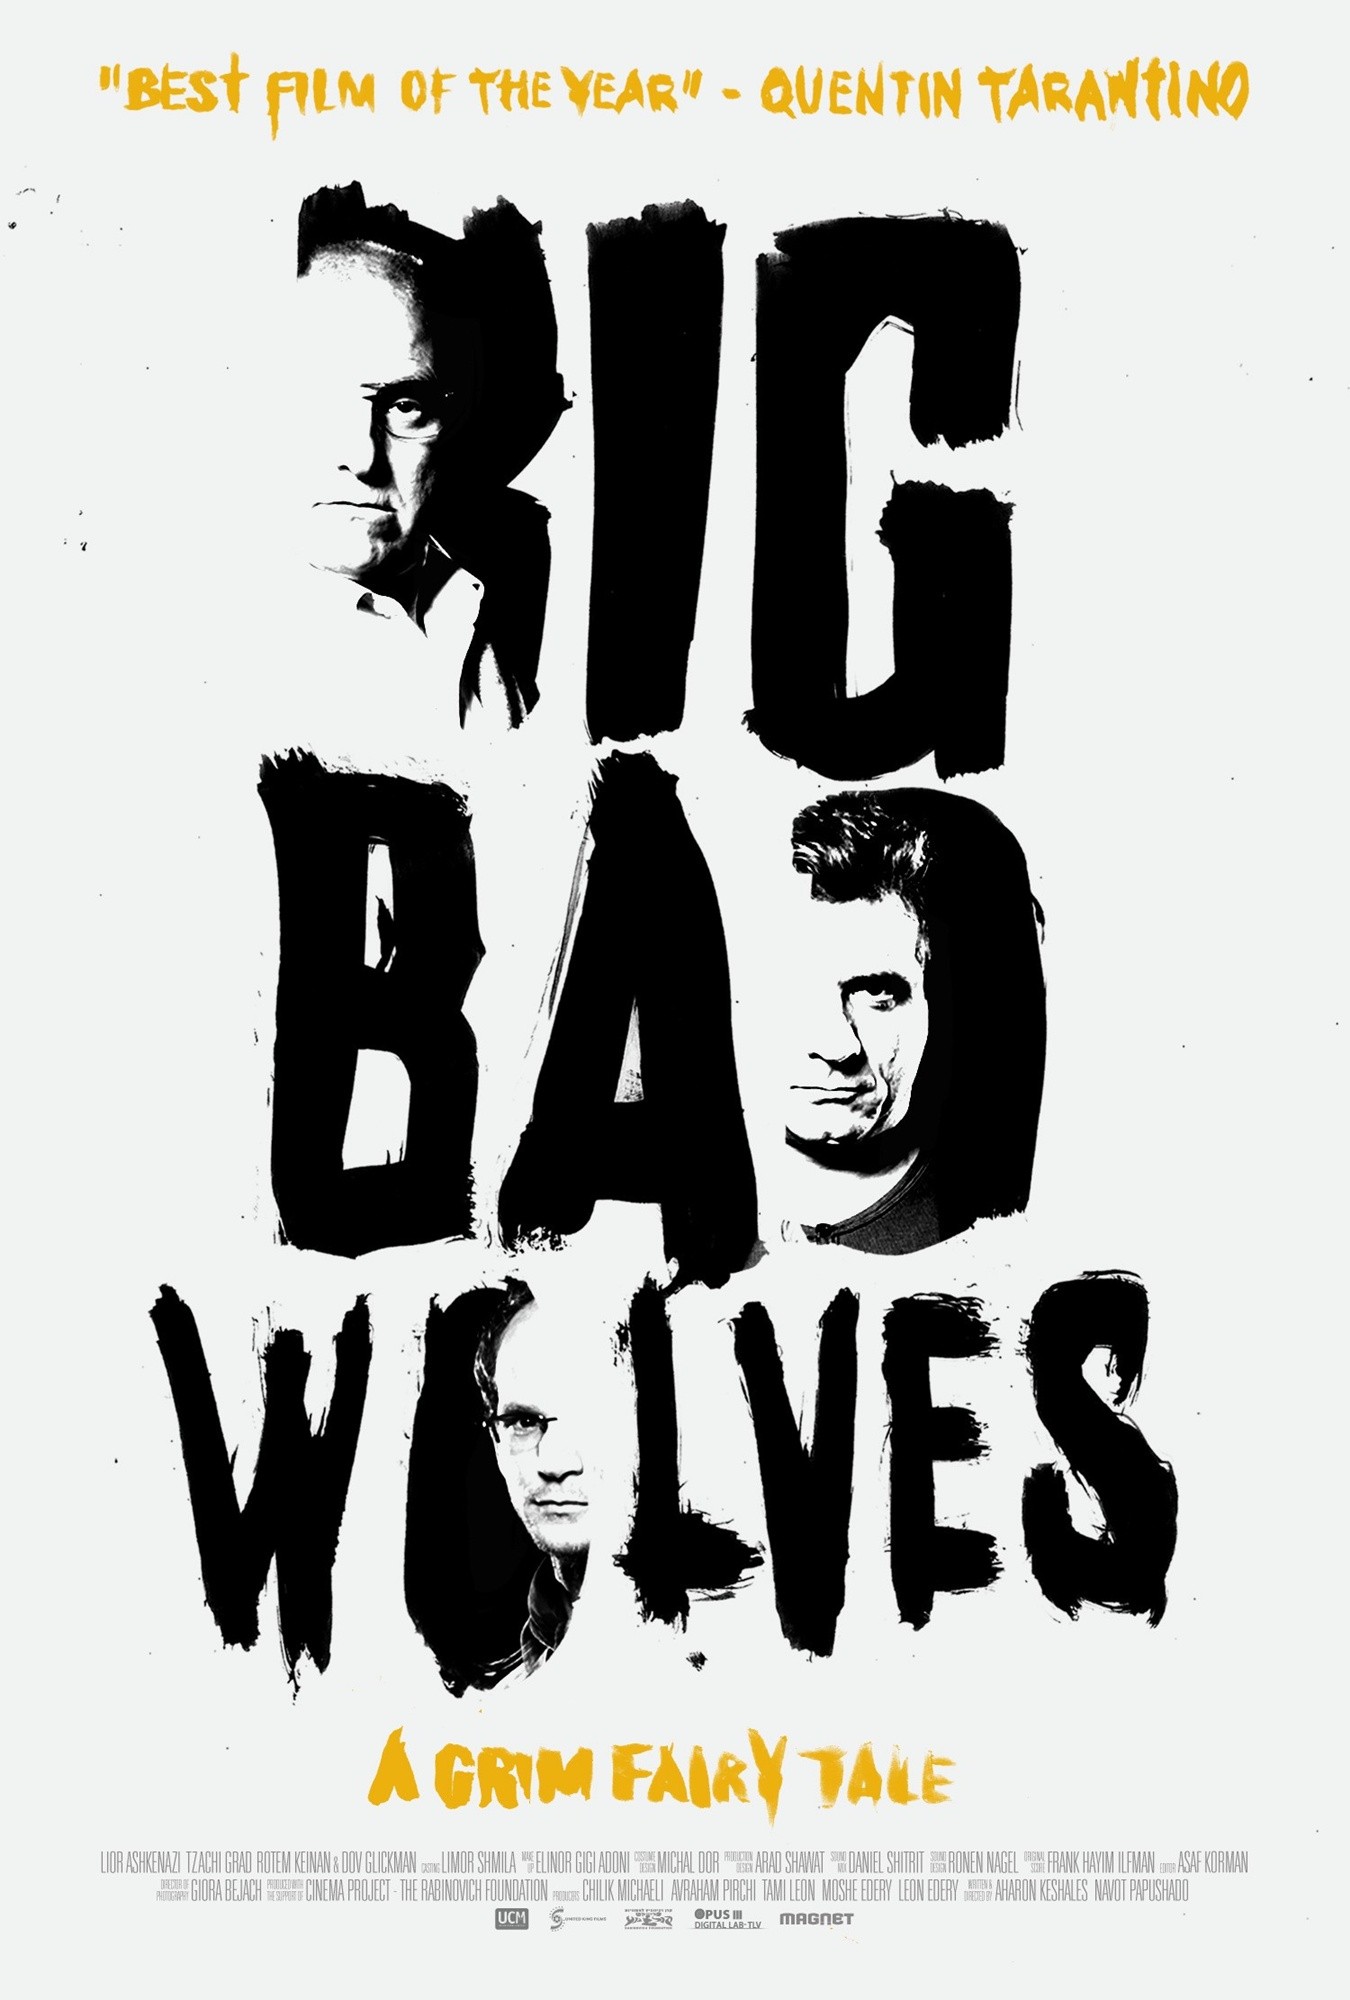 http://www.aceshowbiz.com/images/still/big-bad-wolves-poster05.jpg